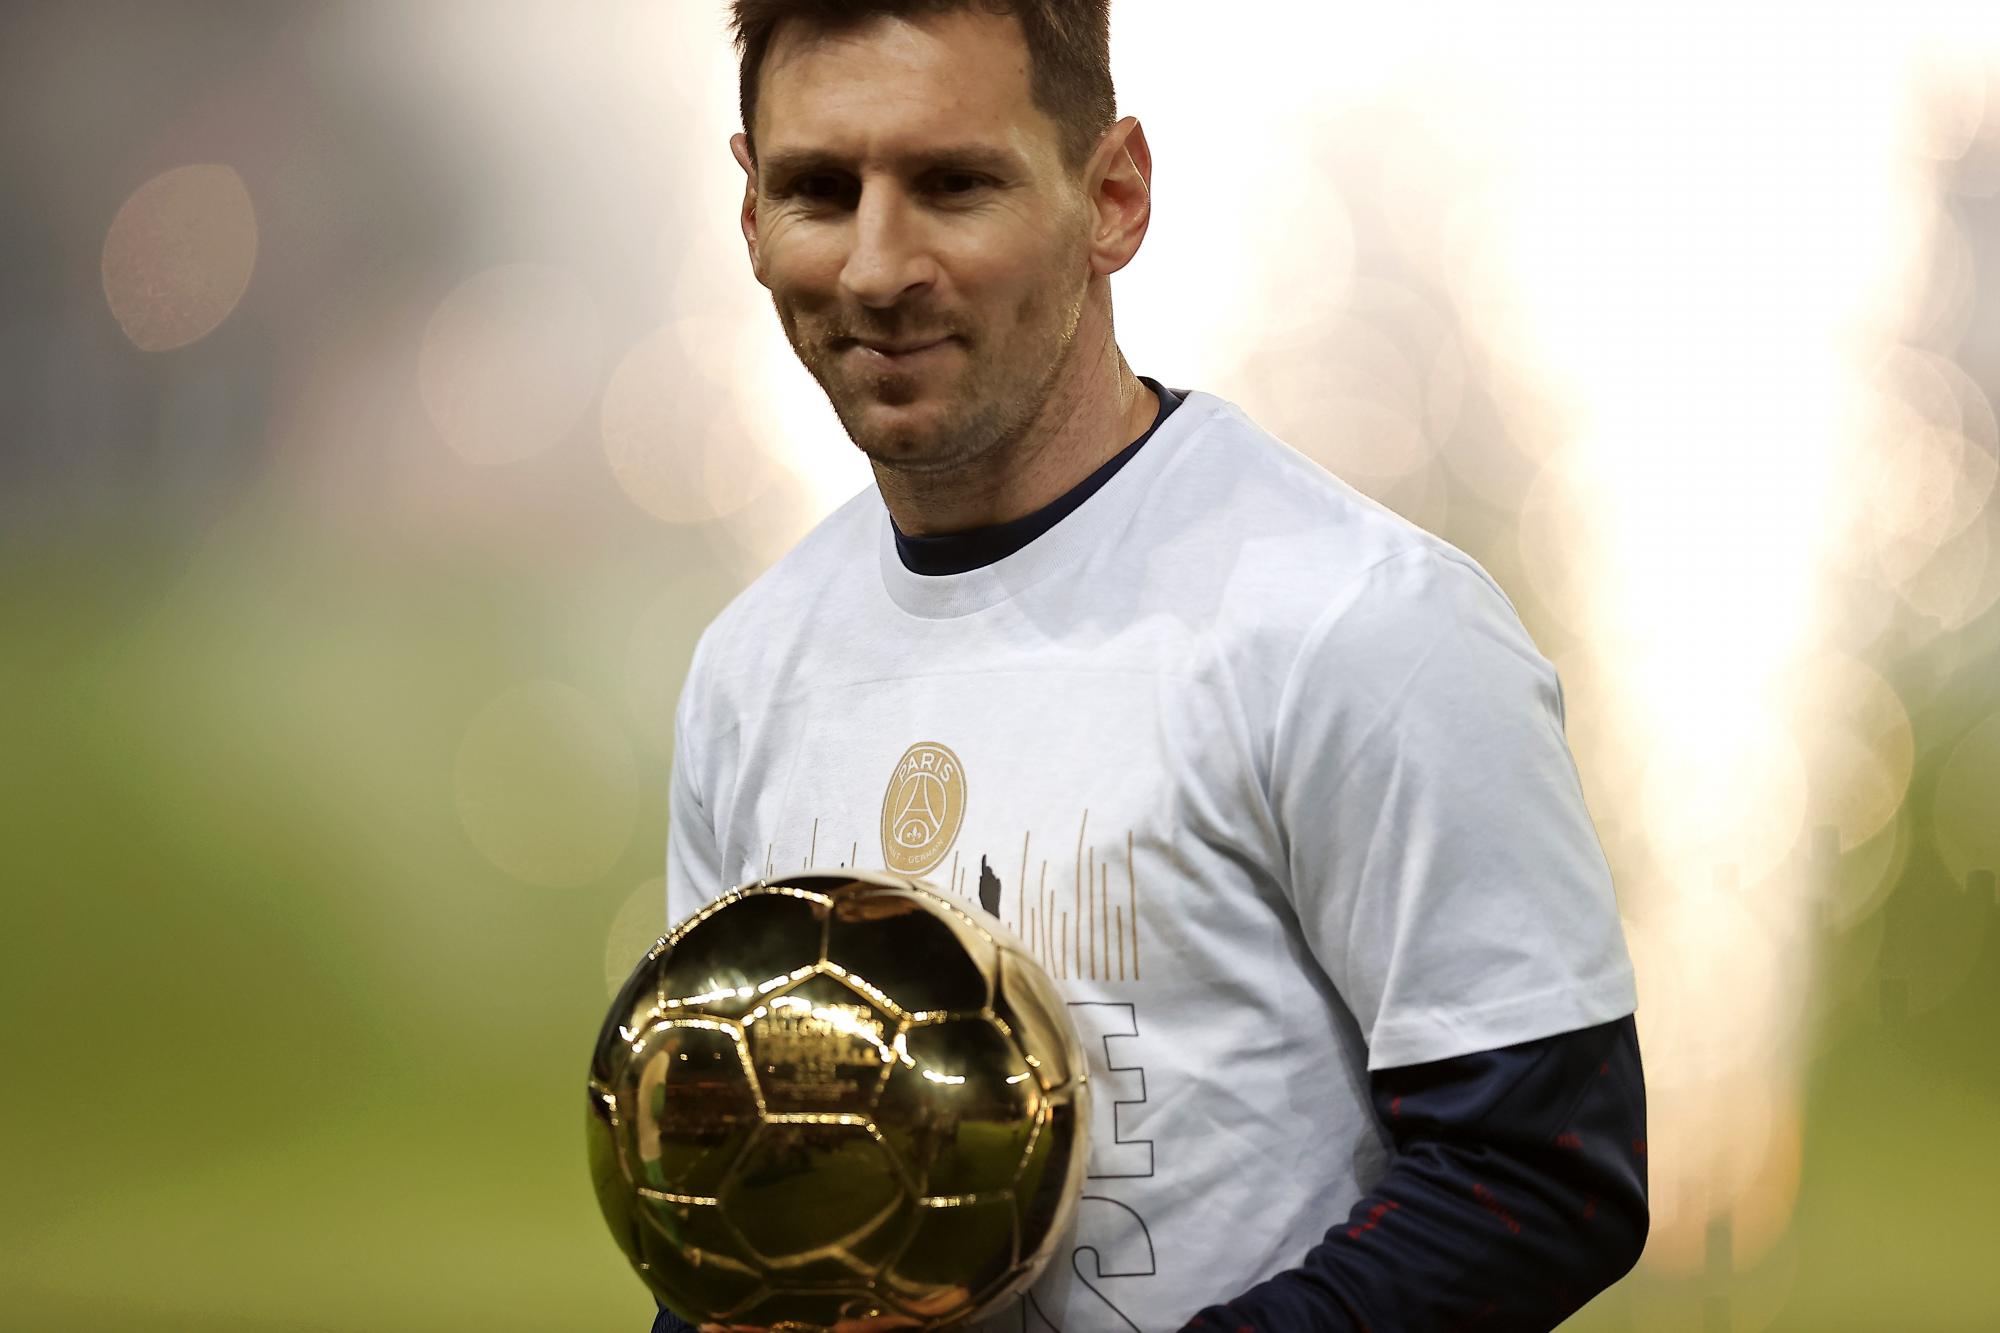 “No cambia nada para mí ser el mejor o no”: Lionel Messi por su séptimo balón de oro. Noticias en tiempo real